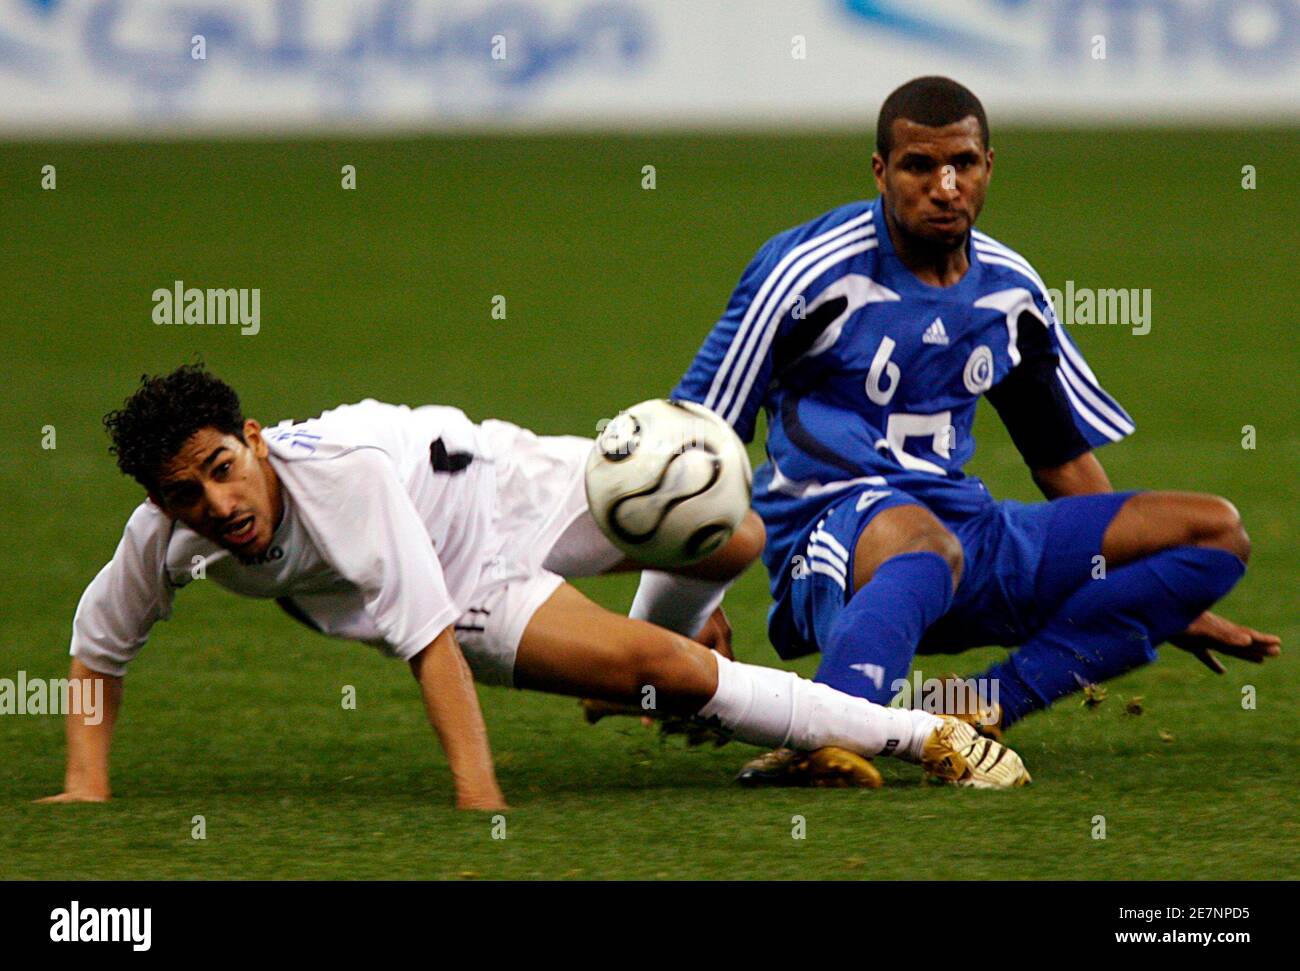 Al Hilal Khaled al Zakar (R) combatte per la palla con Ahmed Oteef di al Shabab durante la partita di calcio di qualificazione della Saudi Crown Prince Cup a Riyadh il 1° marzo 2008. REUTERS/Fahad Shadeed (ARABIA SAUDITA) Foto Stock